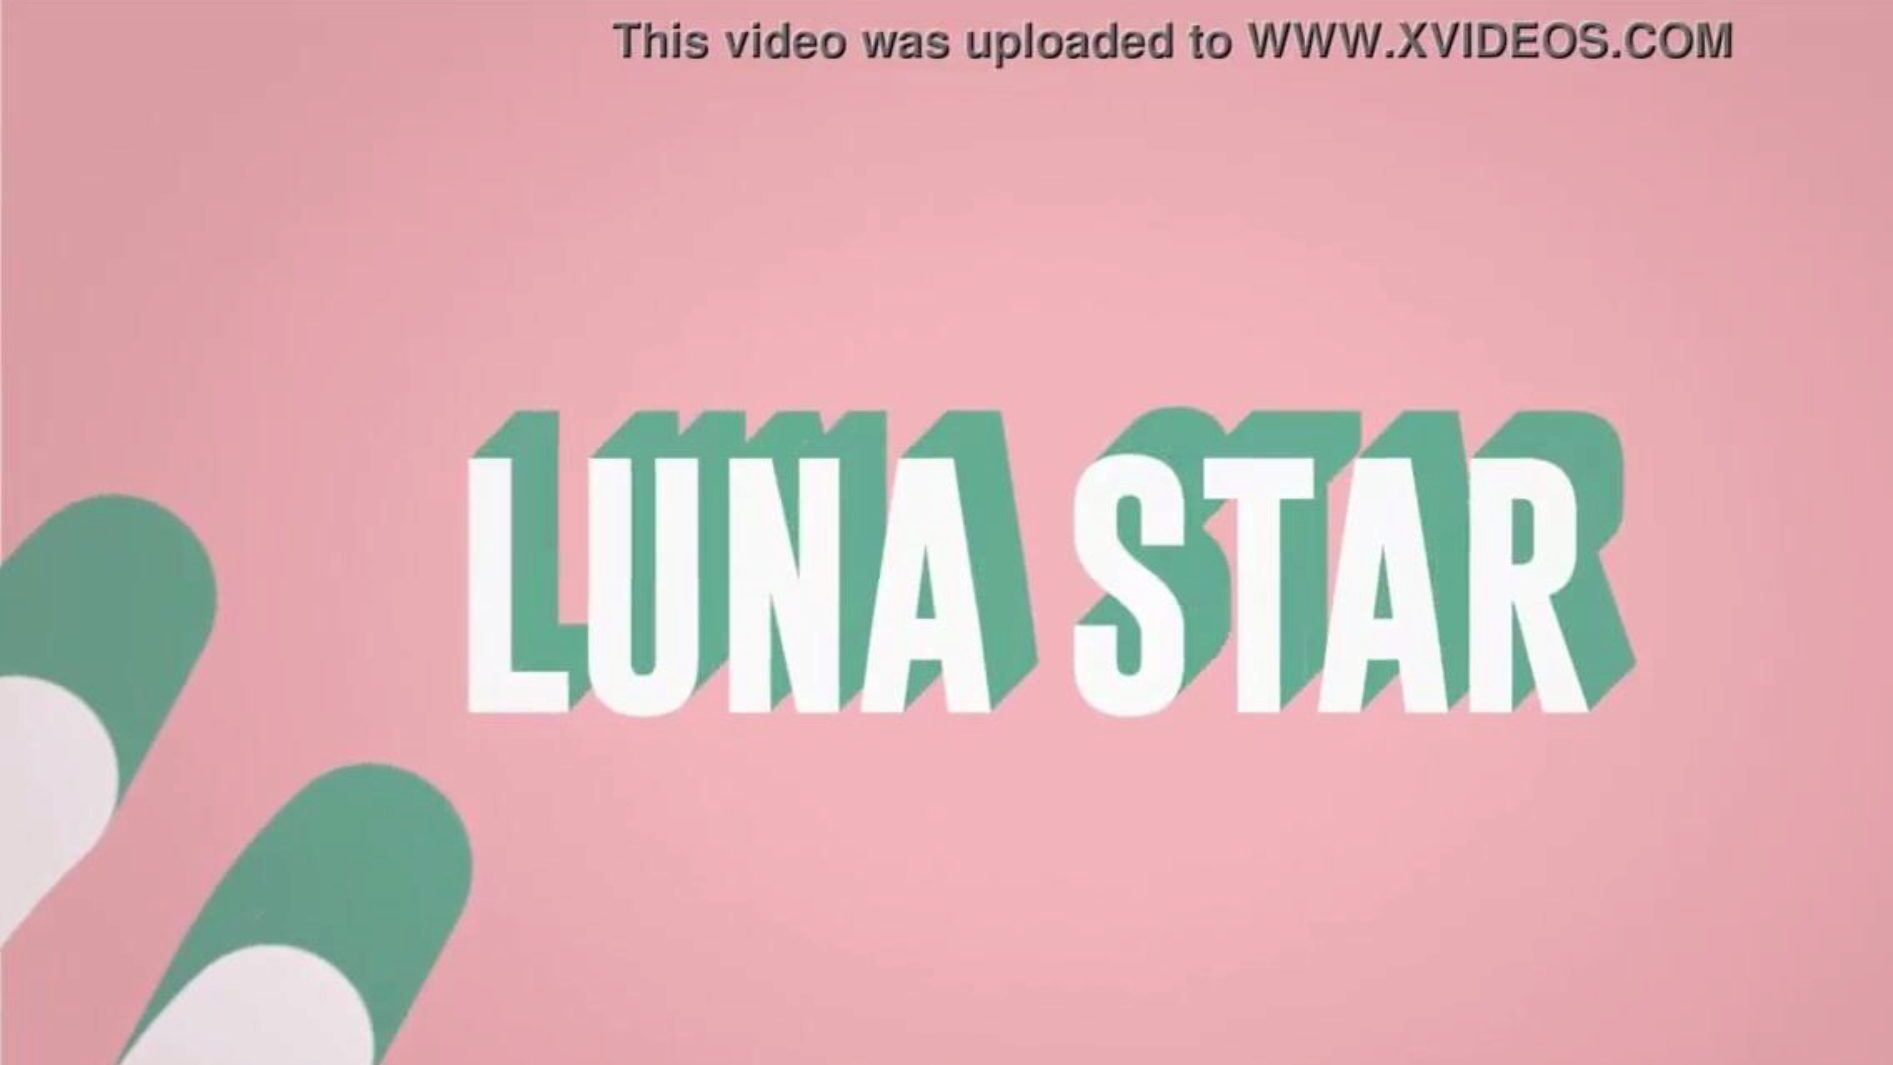 זה ה- wifi המזוין שלי: פרק ברייזר עם כוכב לונה; ראה מלא בכתובת www.zzfull.com/luna